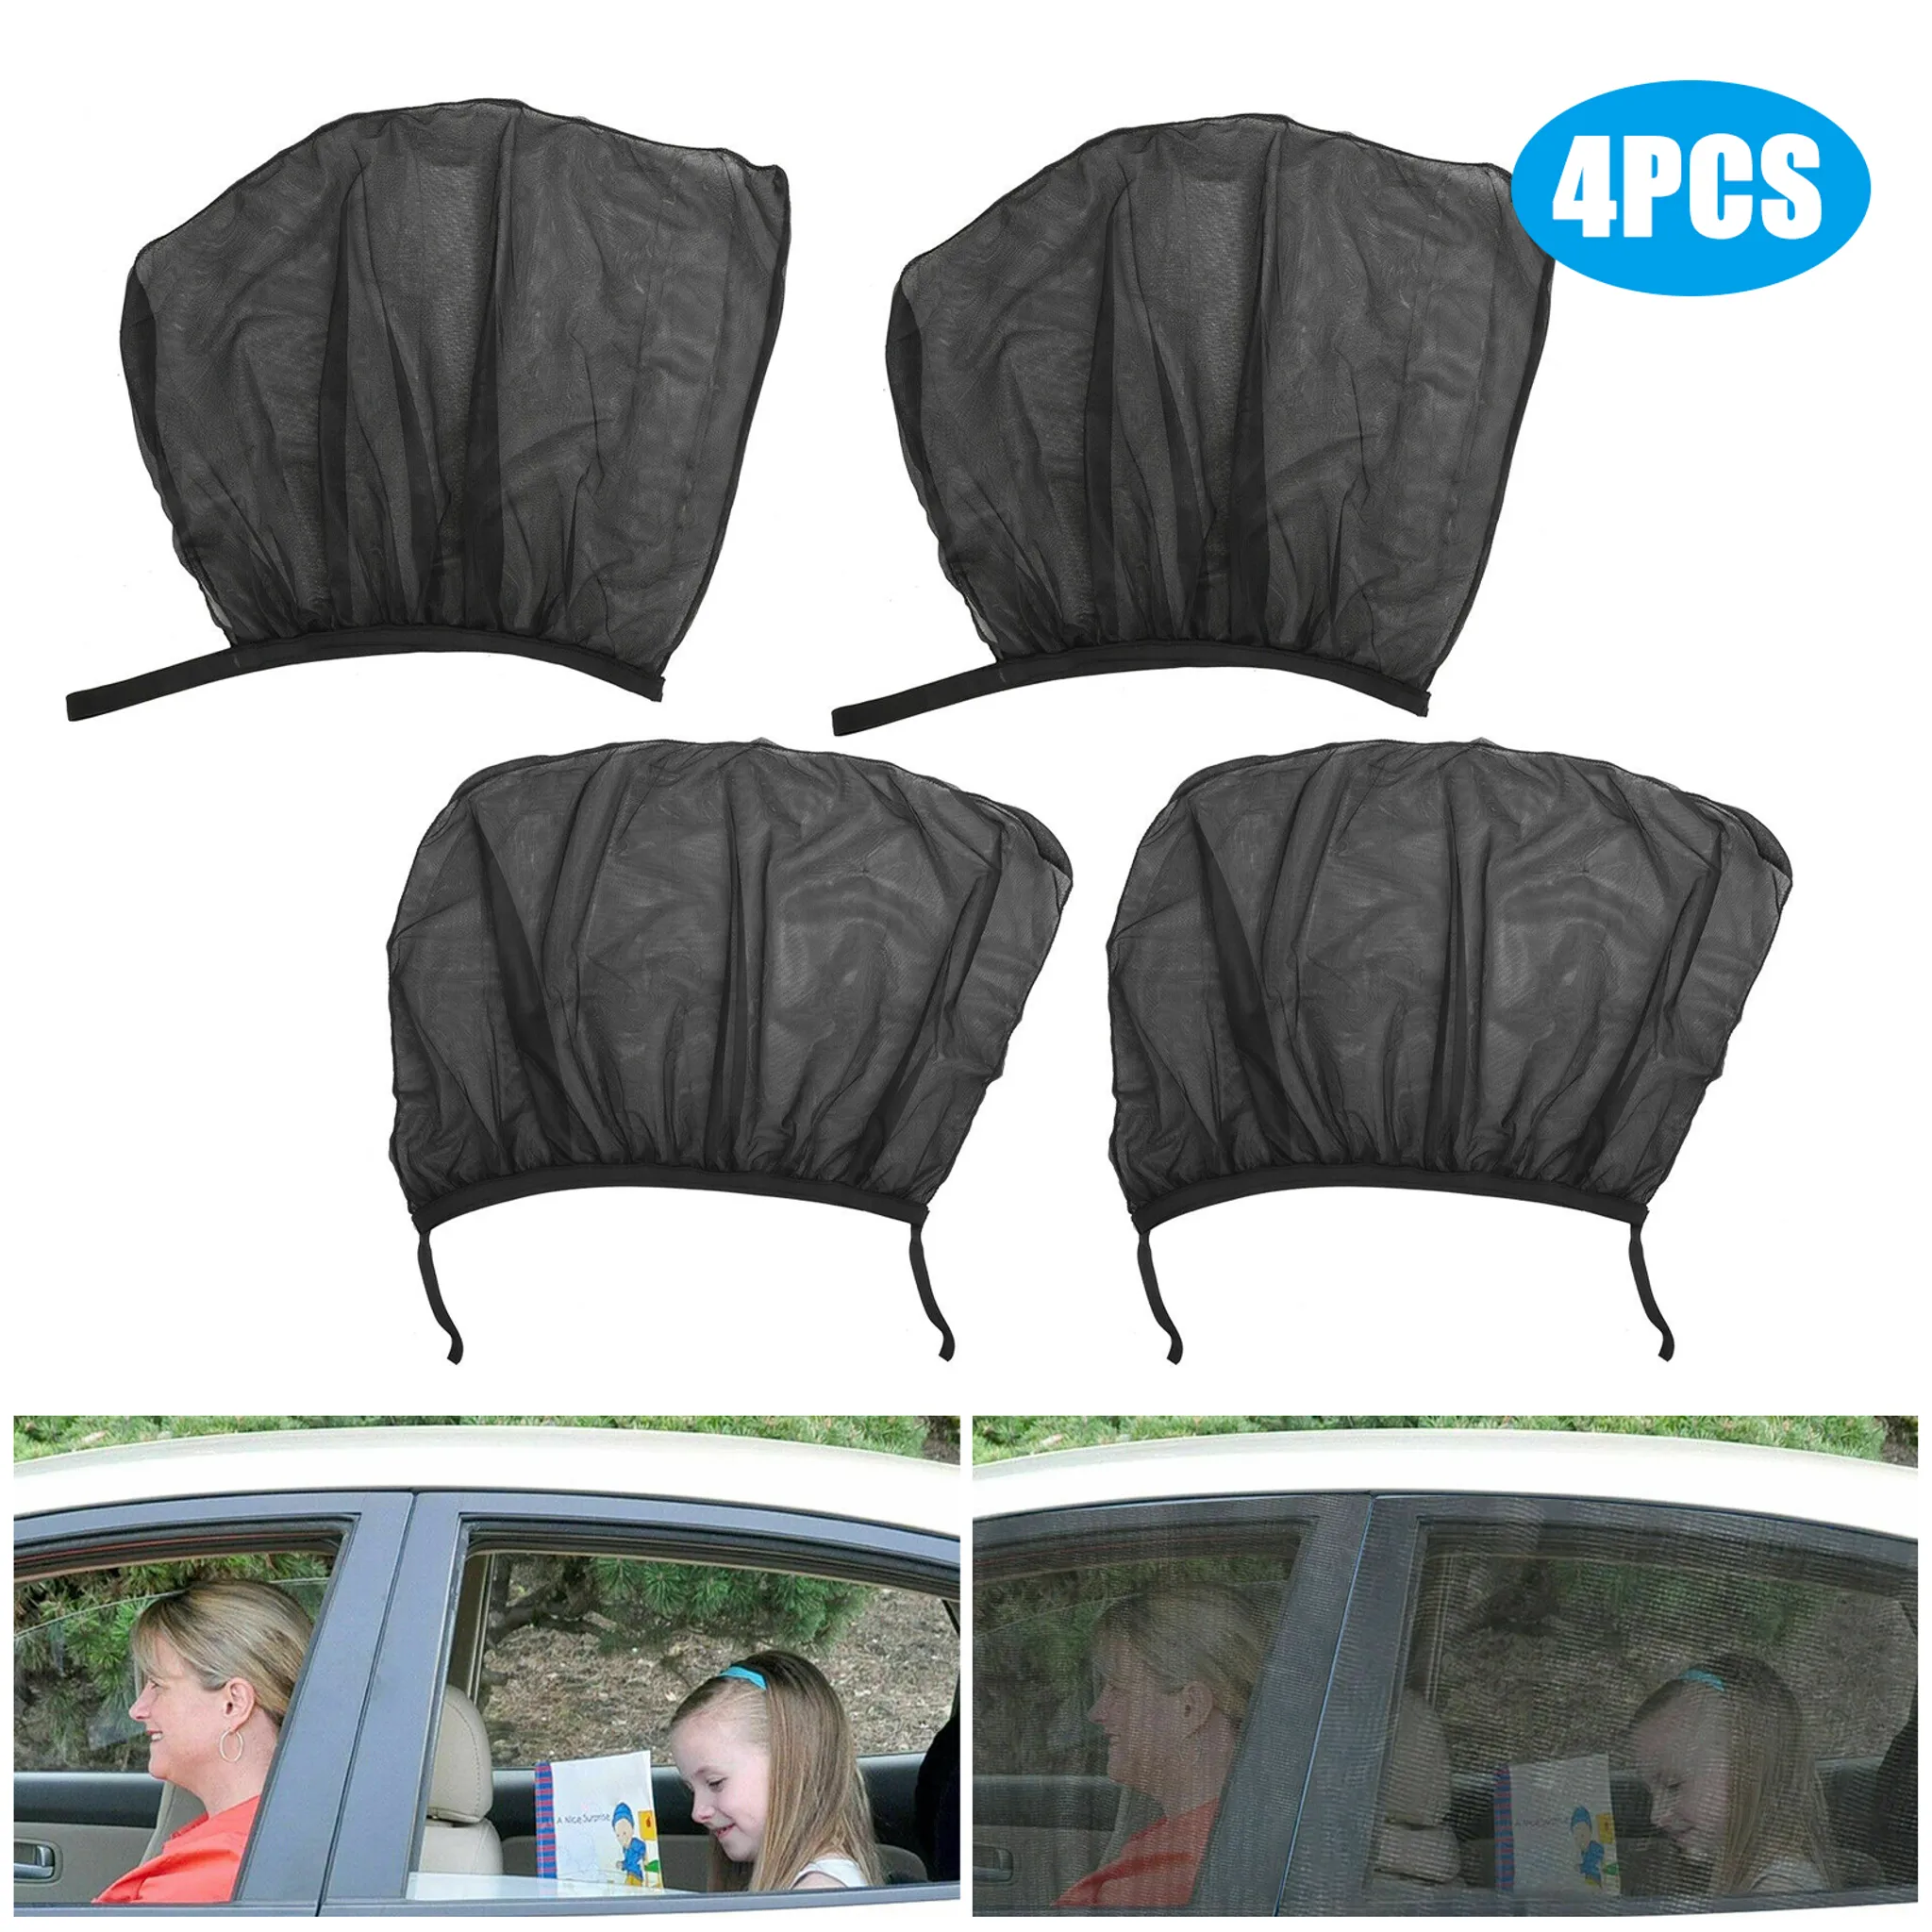 Universal Auto Fenster Schirm Auto Seite Sonnenschutz Block UV Strahlen